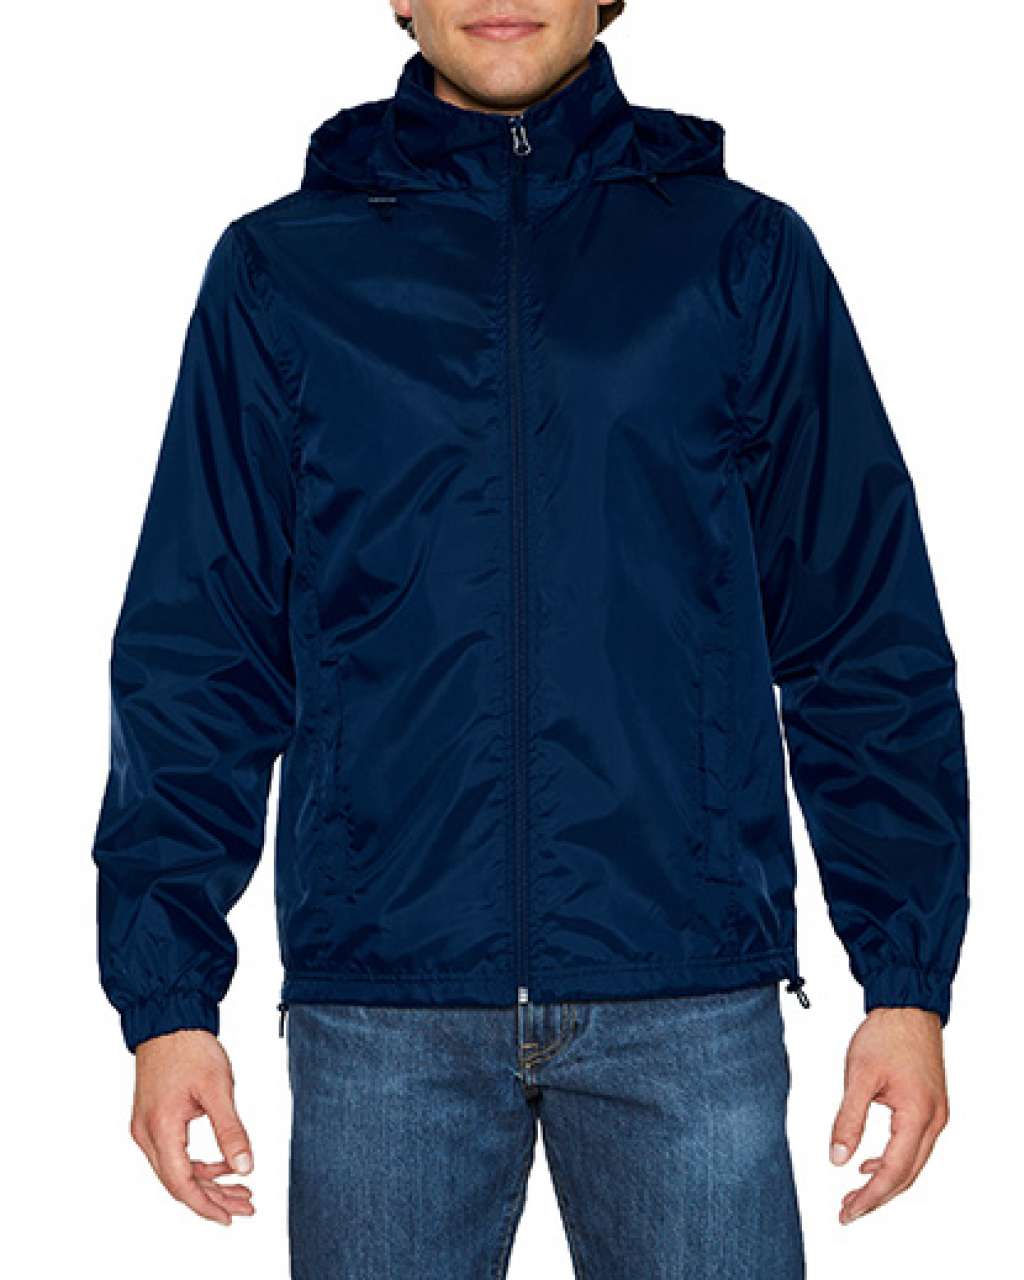 Gildan Hammer Unisex Windwear Jacket - Gildan Hammer Unisex Windwear Jacket - Navy